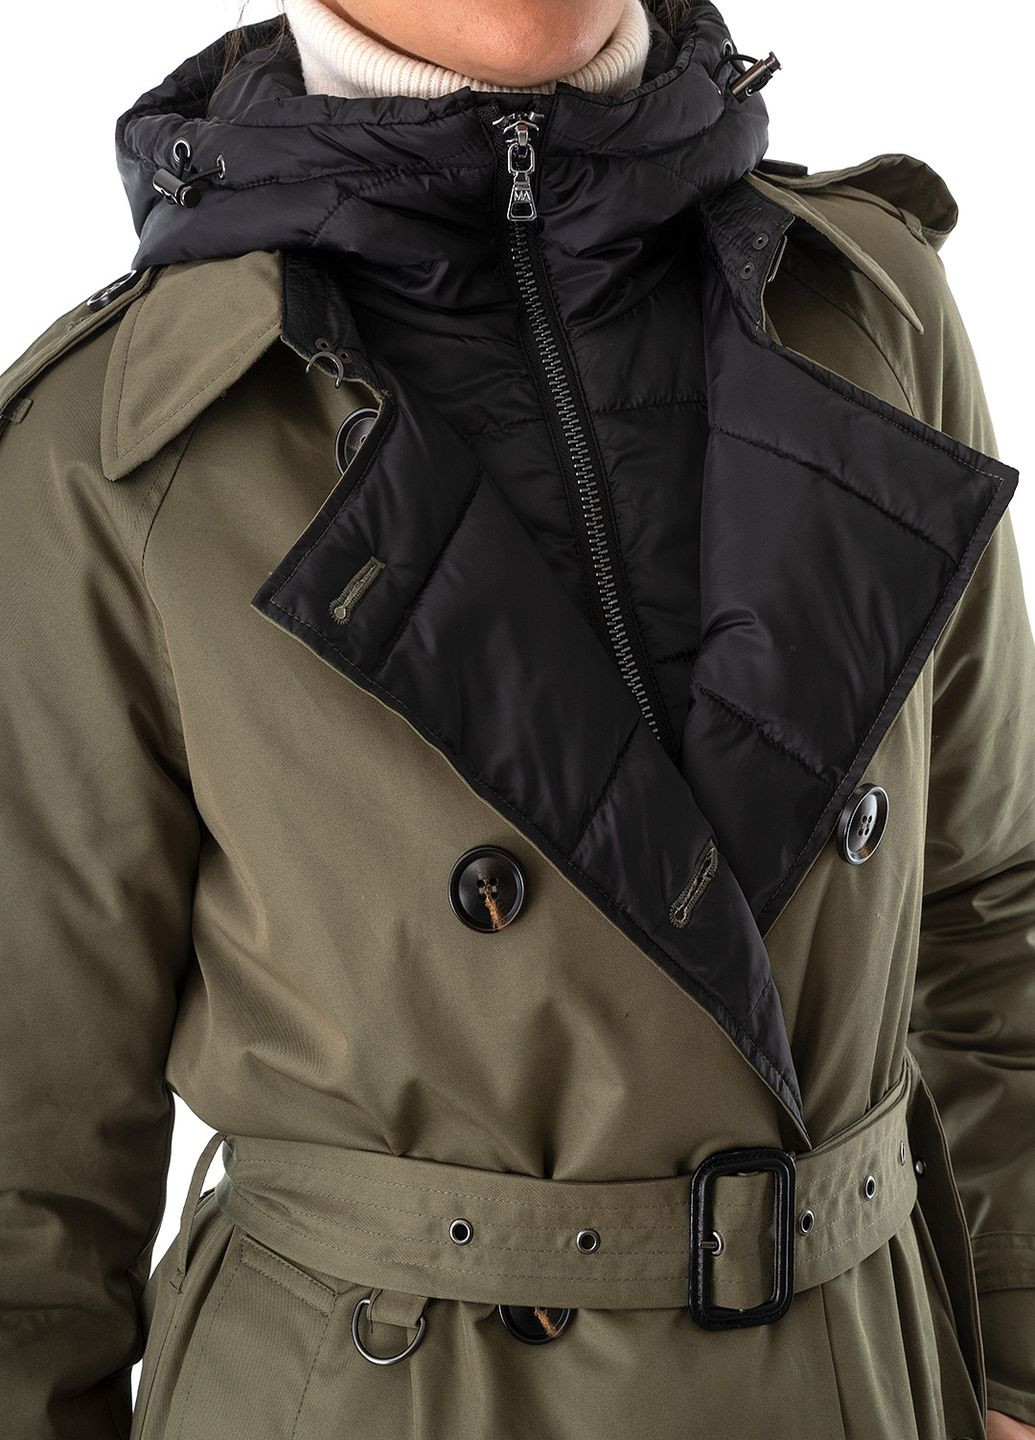 Оливковая (хаки) зимняя куртка Marc Aurel